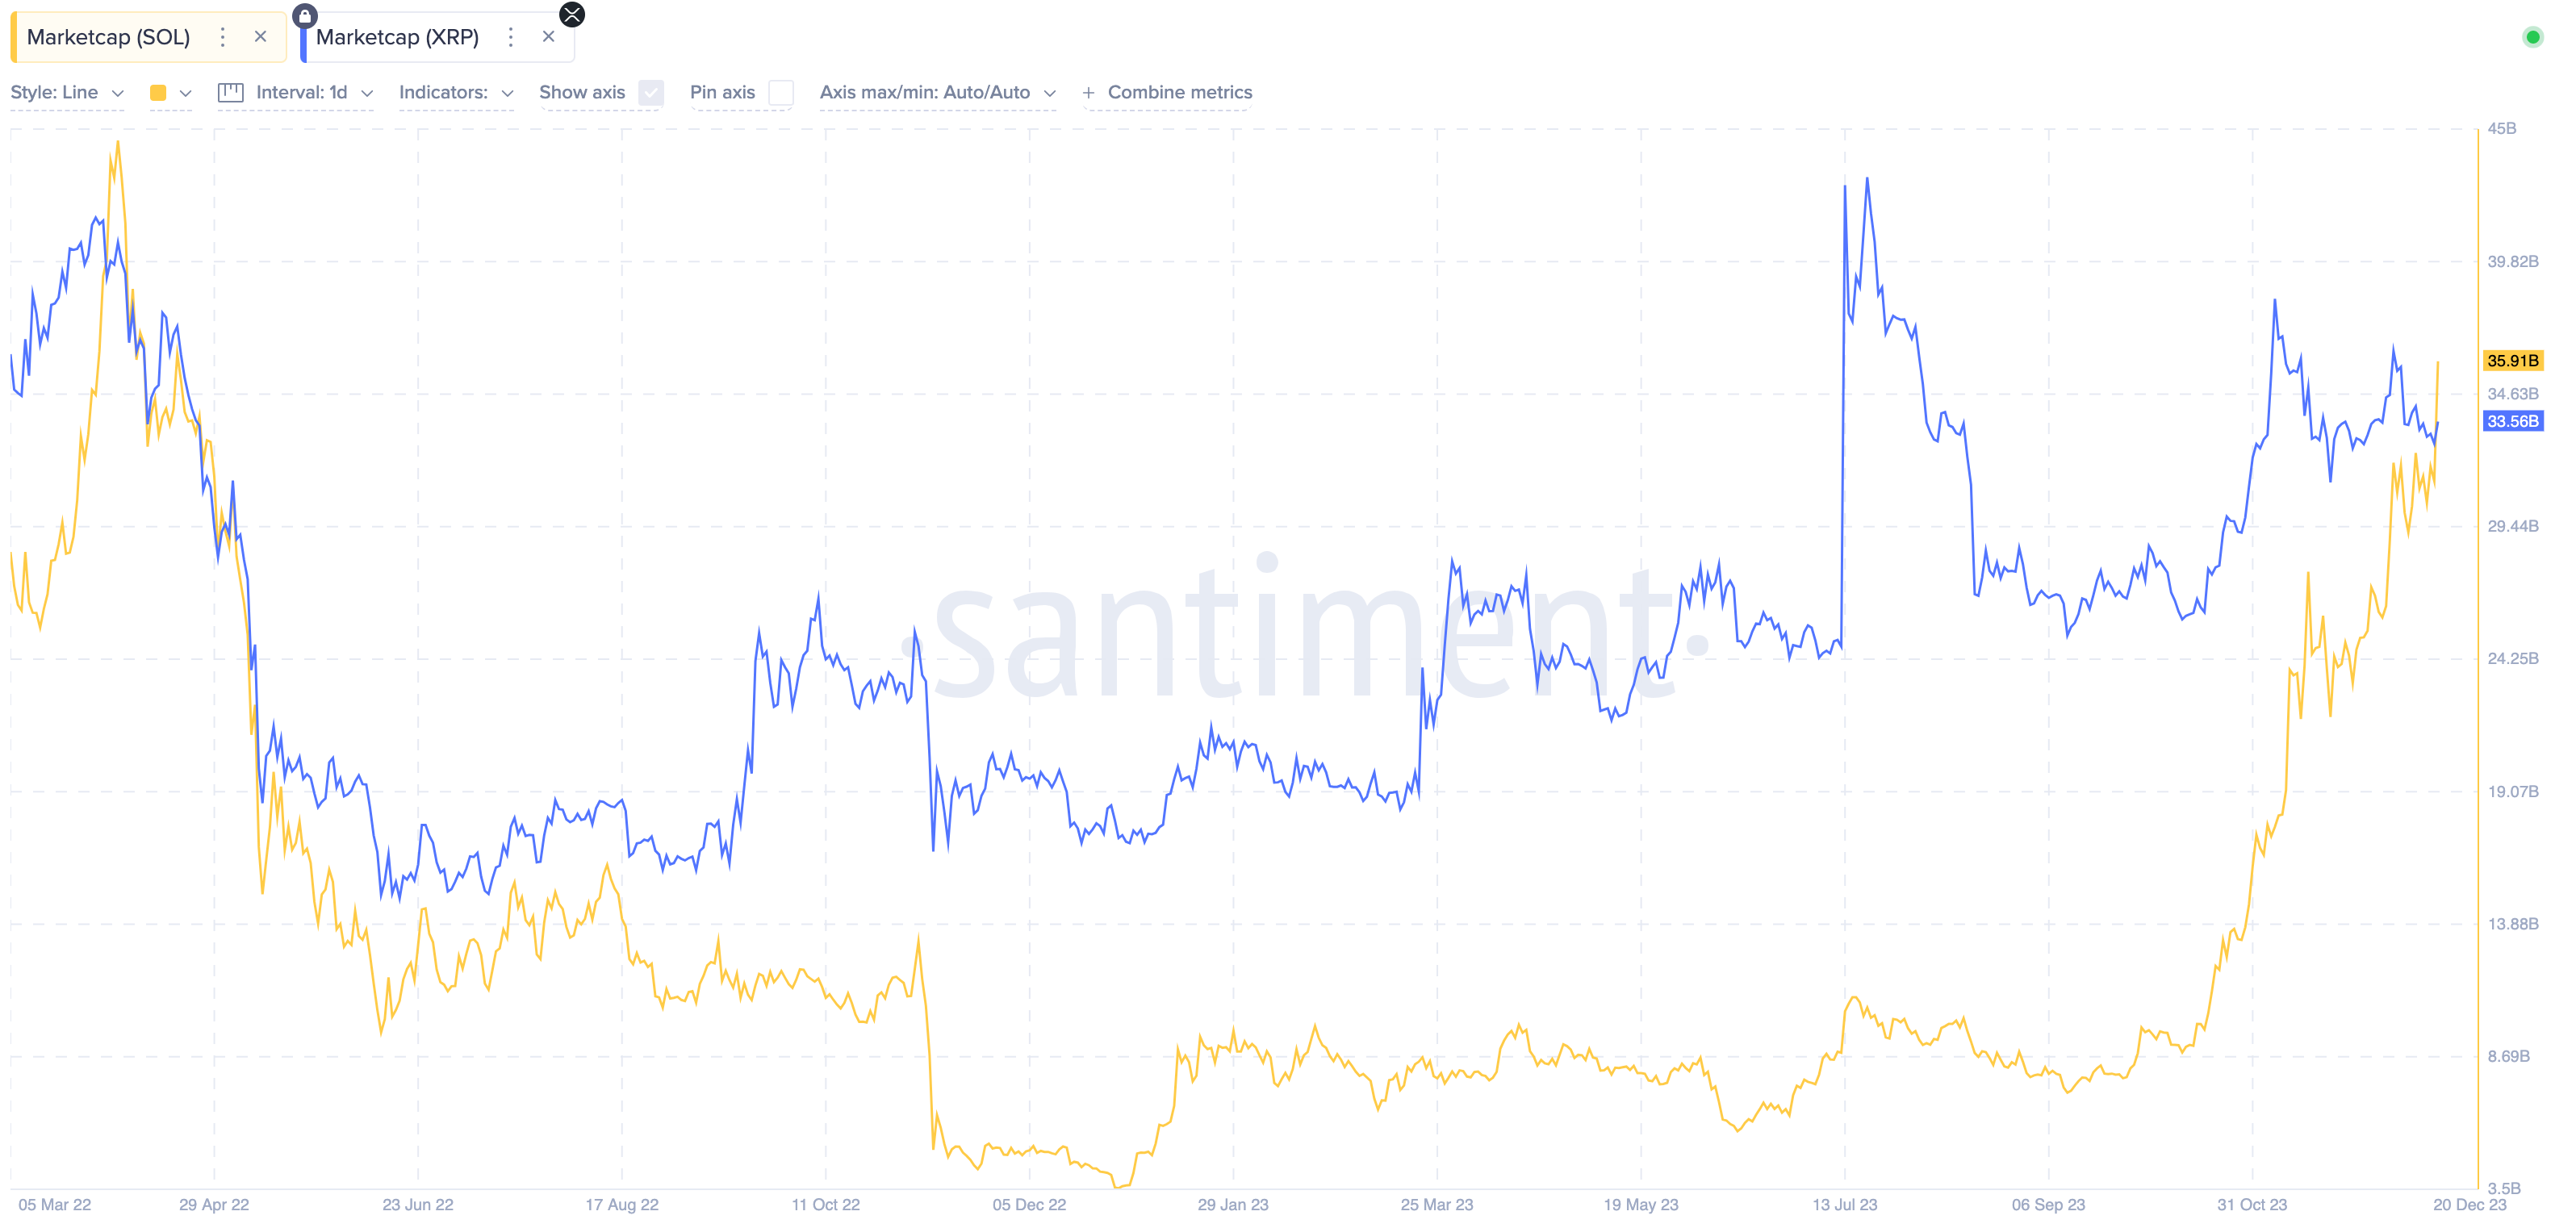 Solana (SOL) vs. Ripple (XRP) Market Cap | Source: Santiment